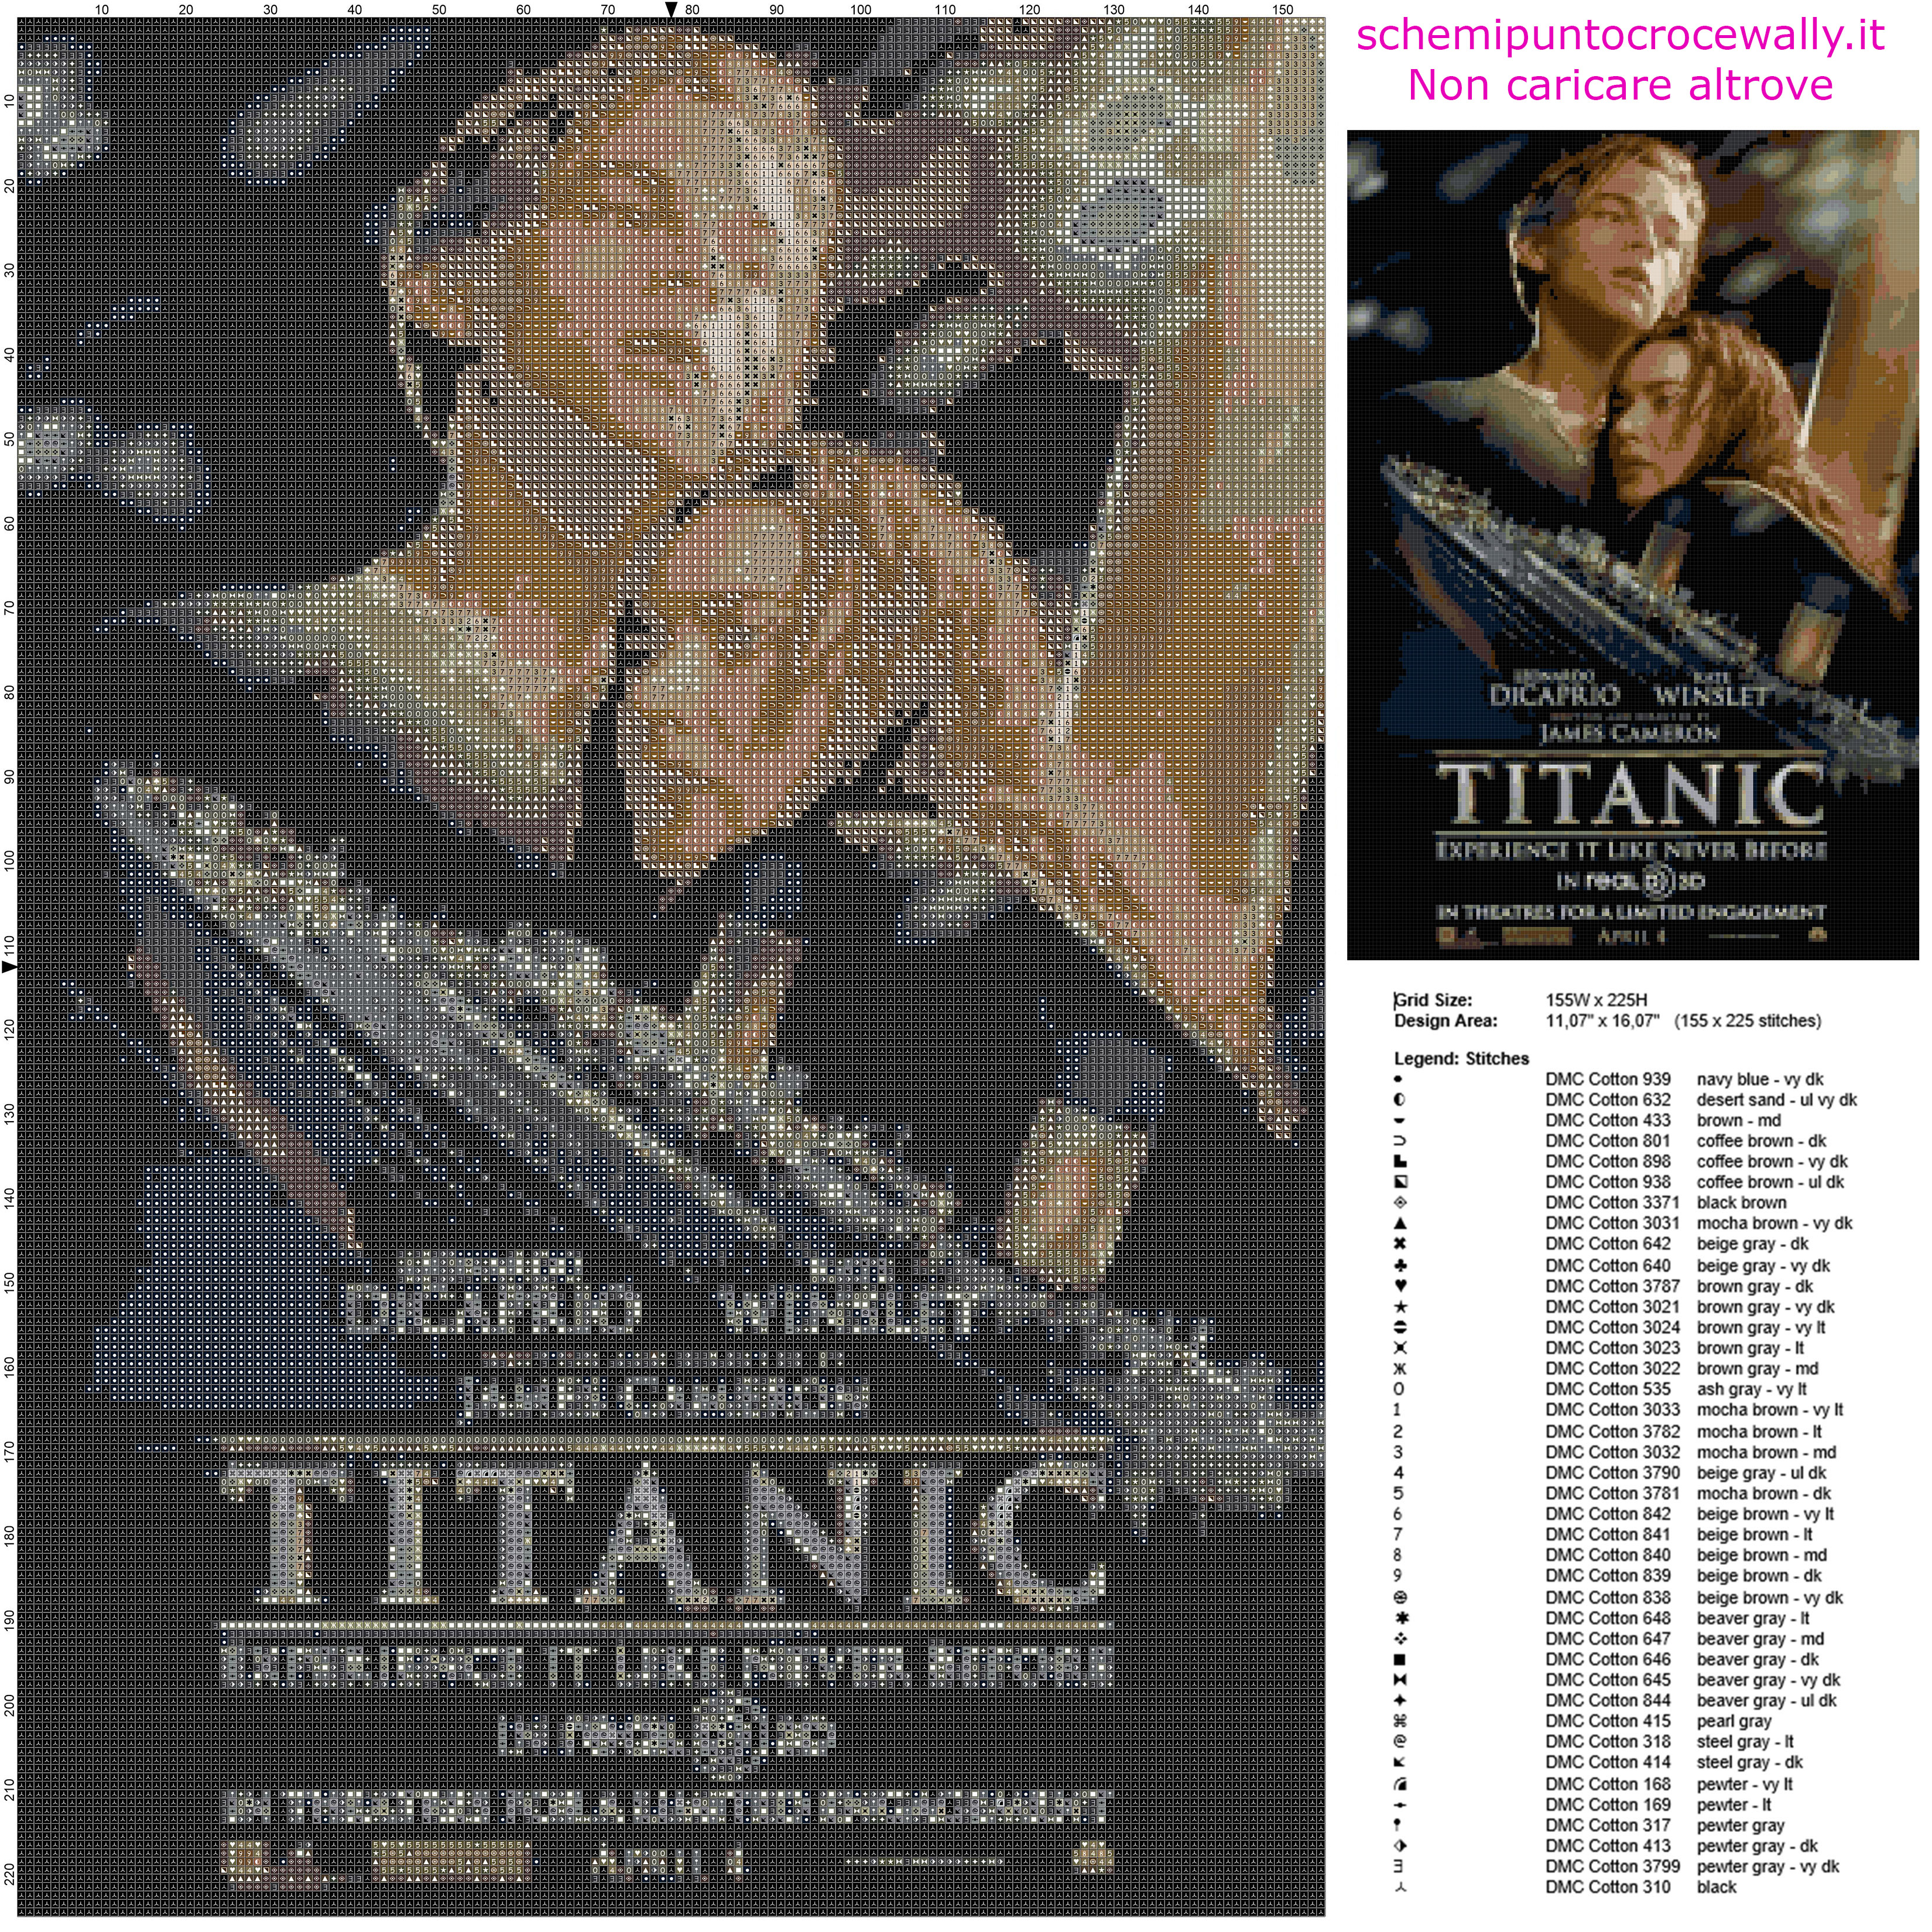 Il poster del film Titanic schema punto croce da ricamare gratis